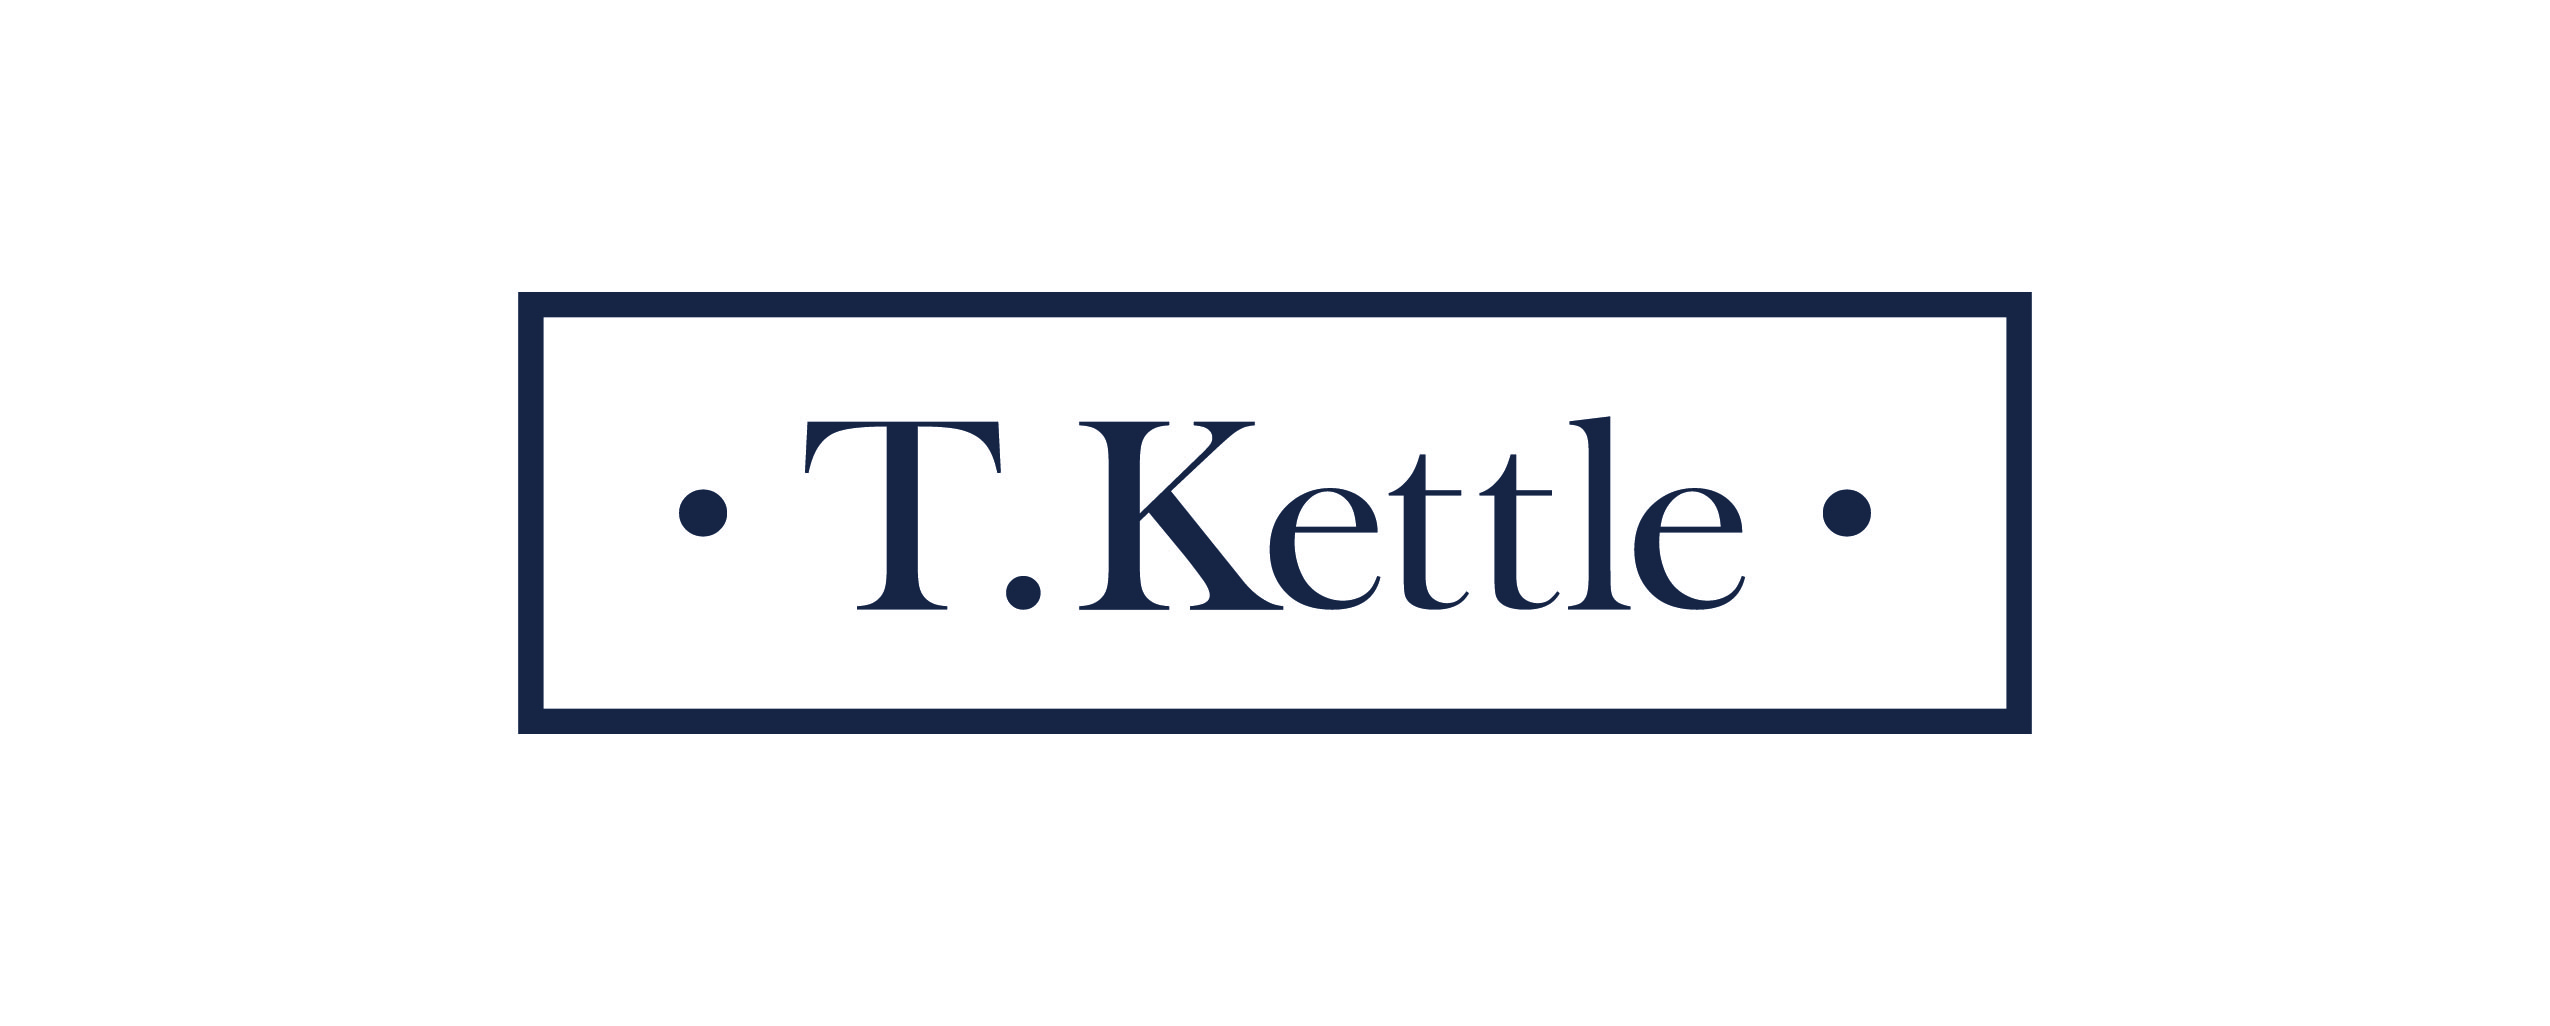 T. Kettle logo